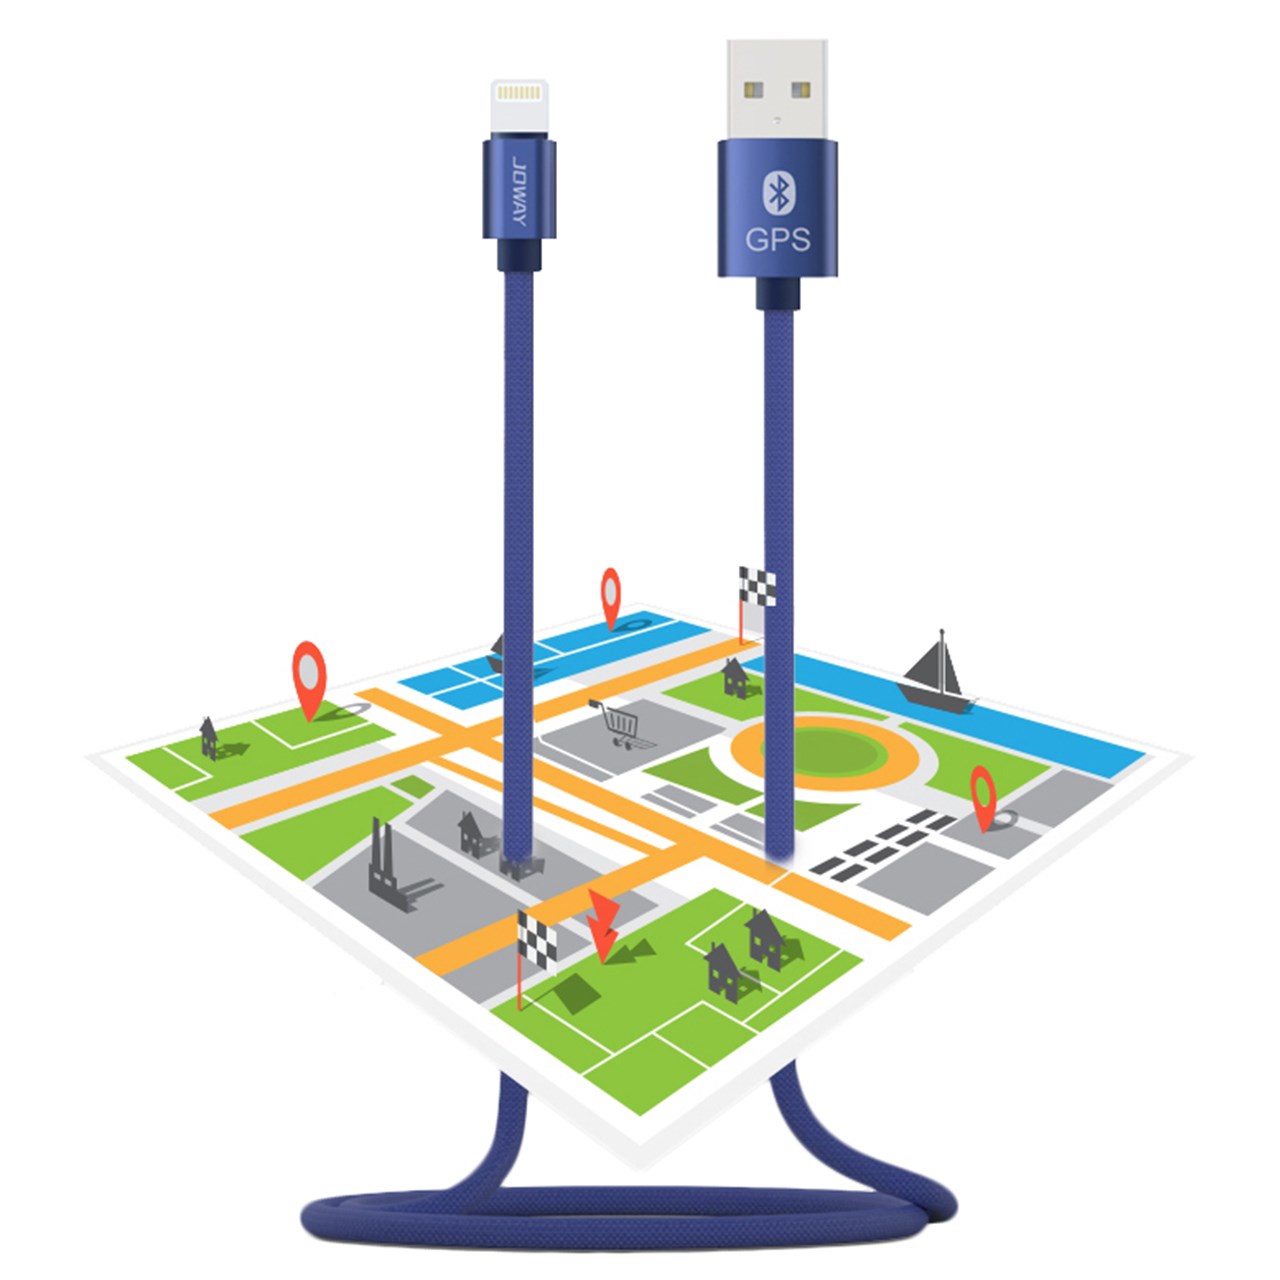 کابل تبدیل USB به لایتنینگ جووی  مدل Li113  با قابلیت بلوتوث و GPS به طول 1 متر